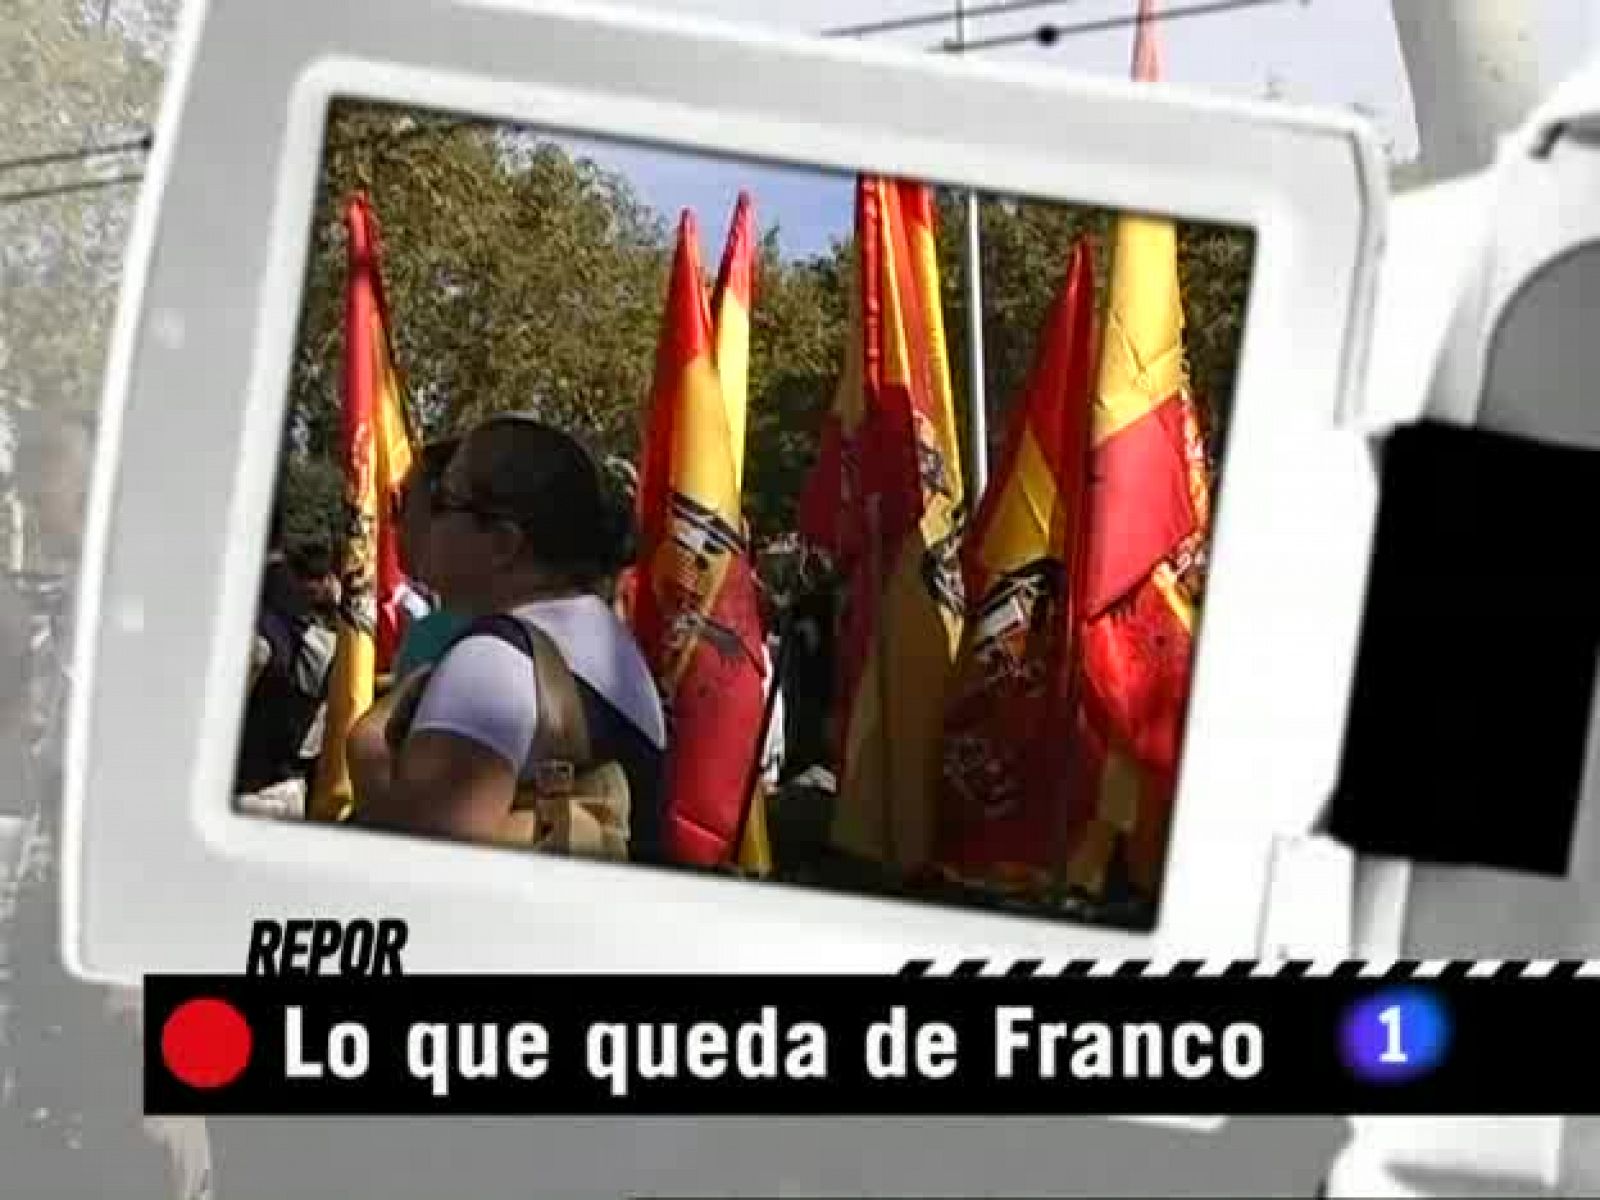 Repor - Lo que queda de Franco